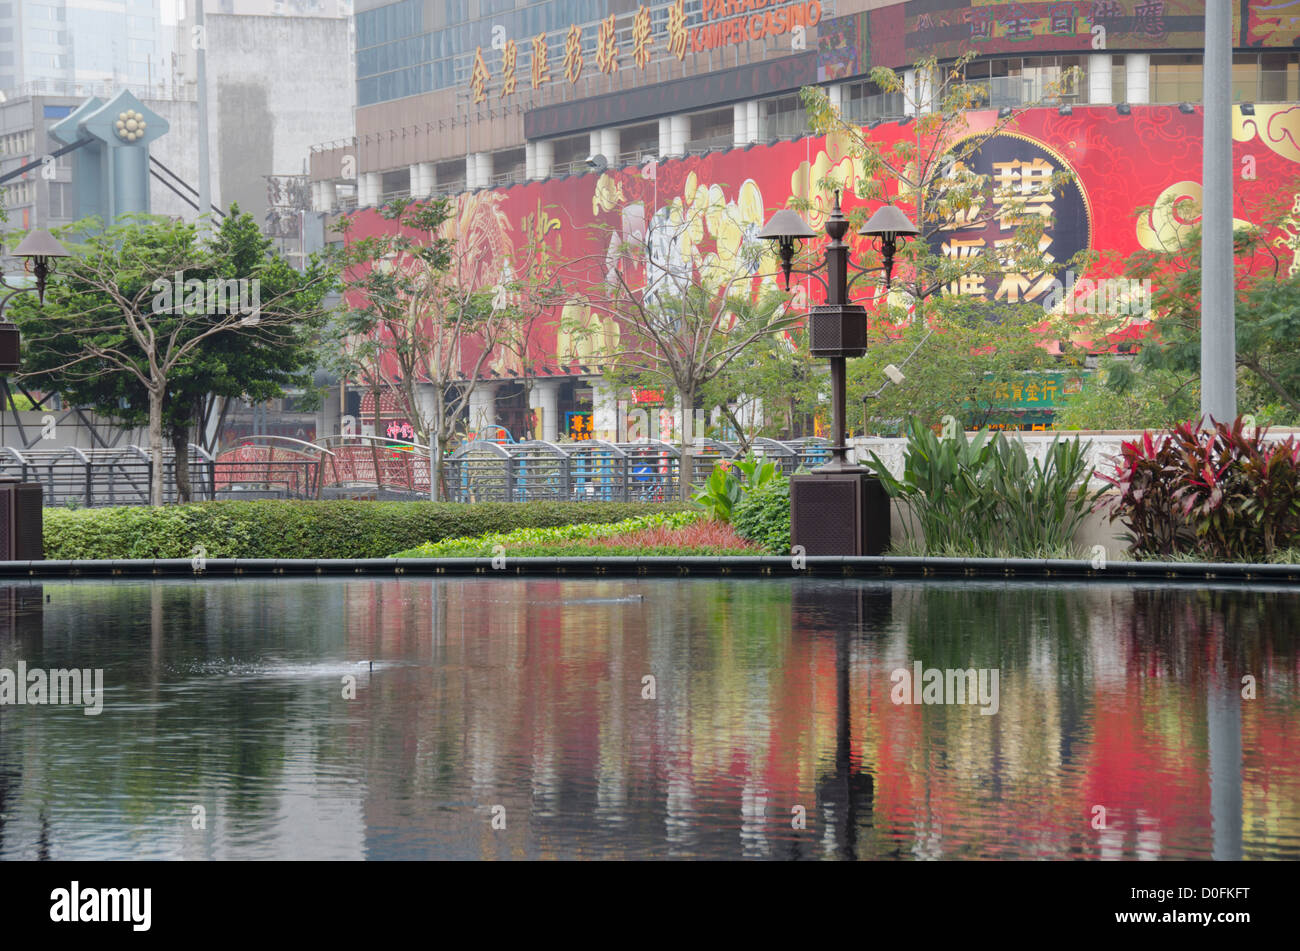 China, Macau. Macau war die erste & letzte europäische Kolonie in China. Paradies Kampek Casino. Stockfoto